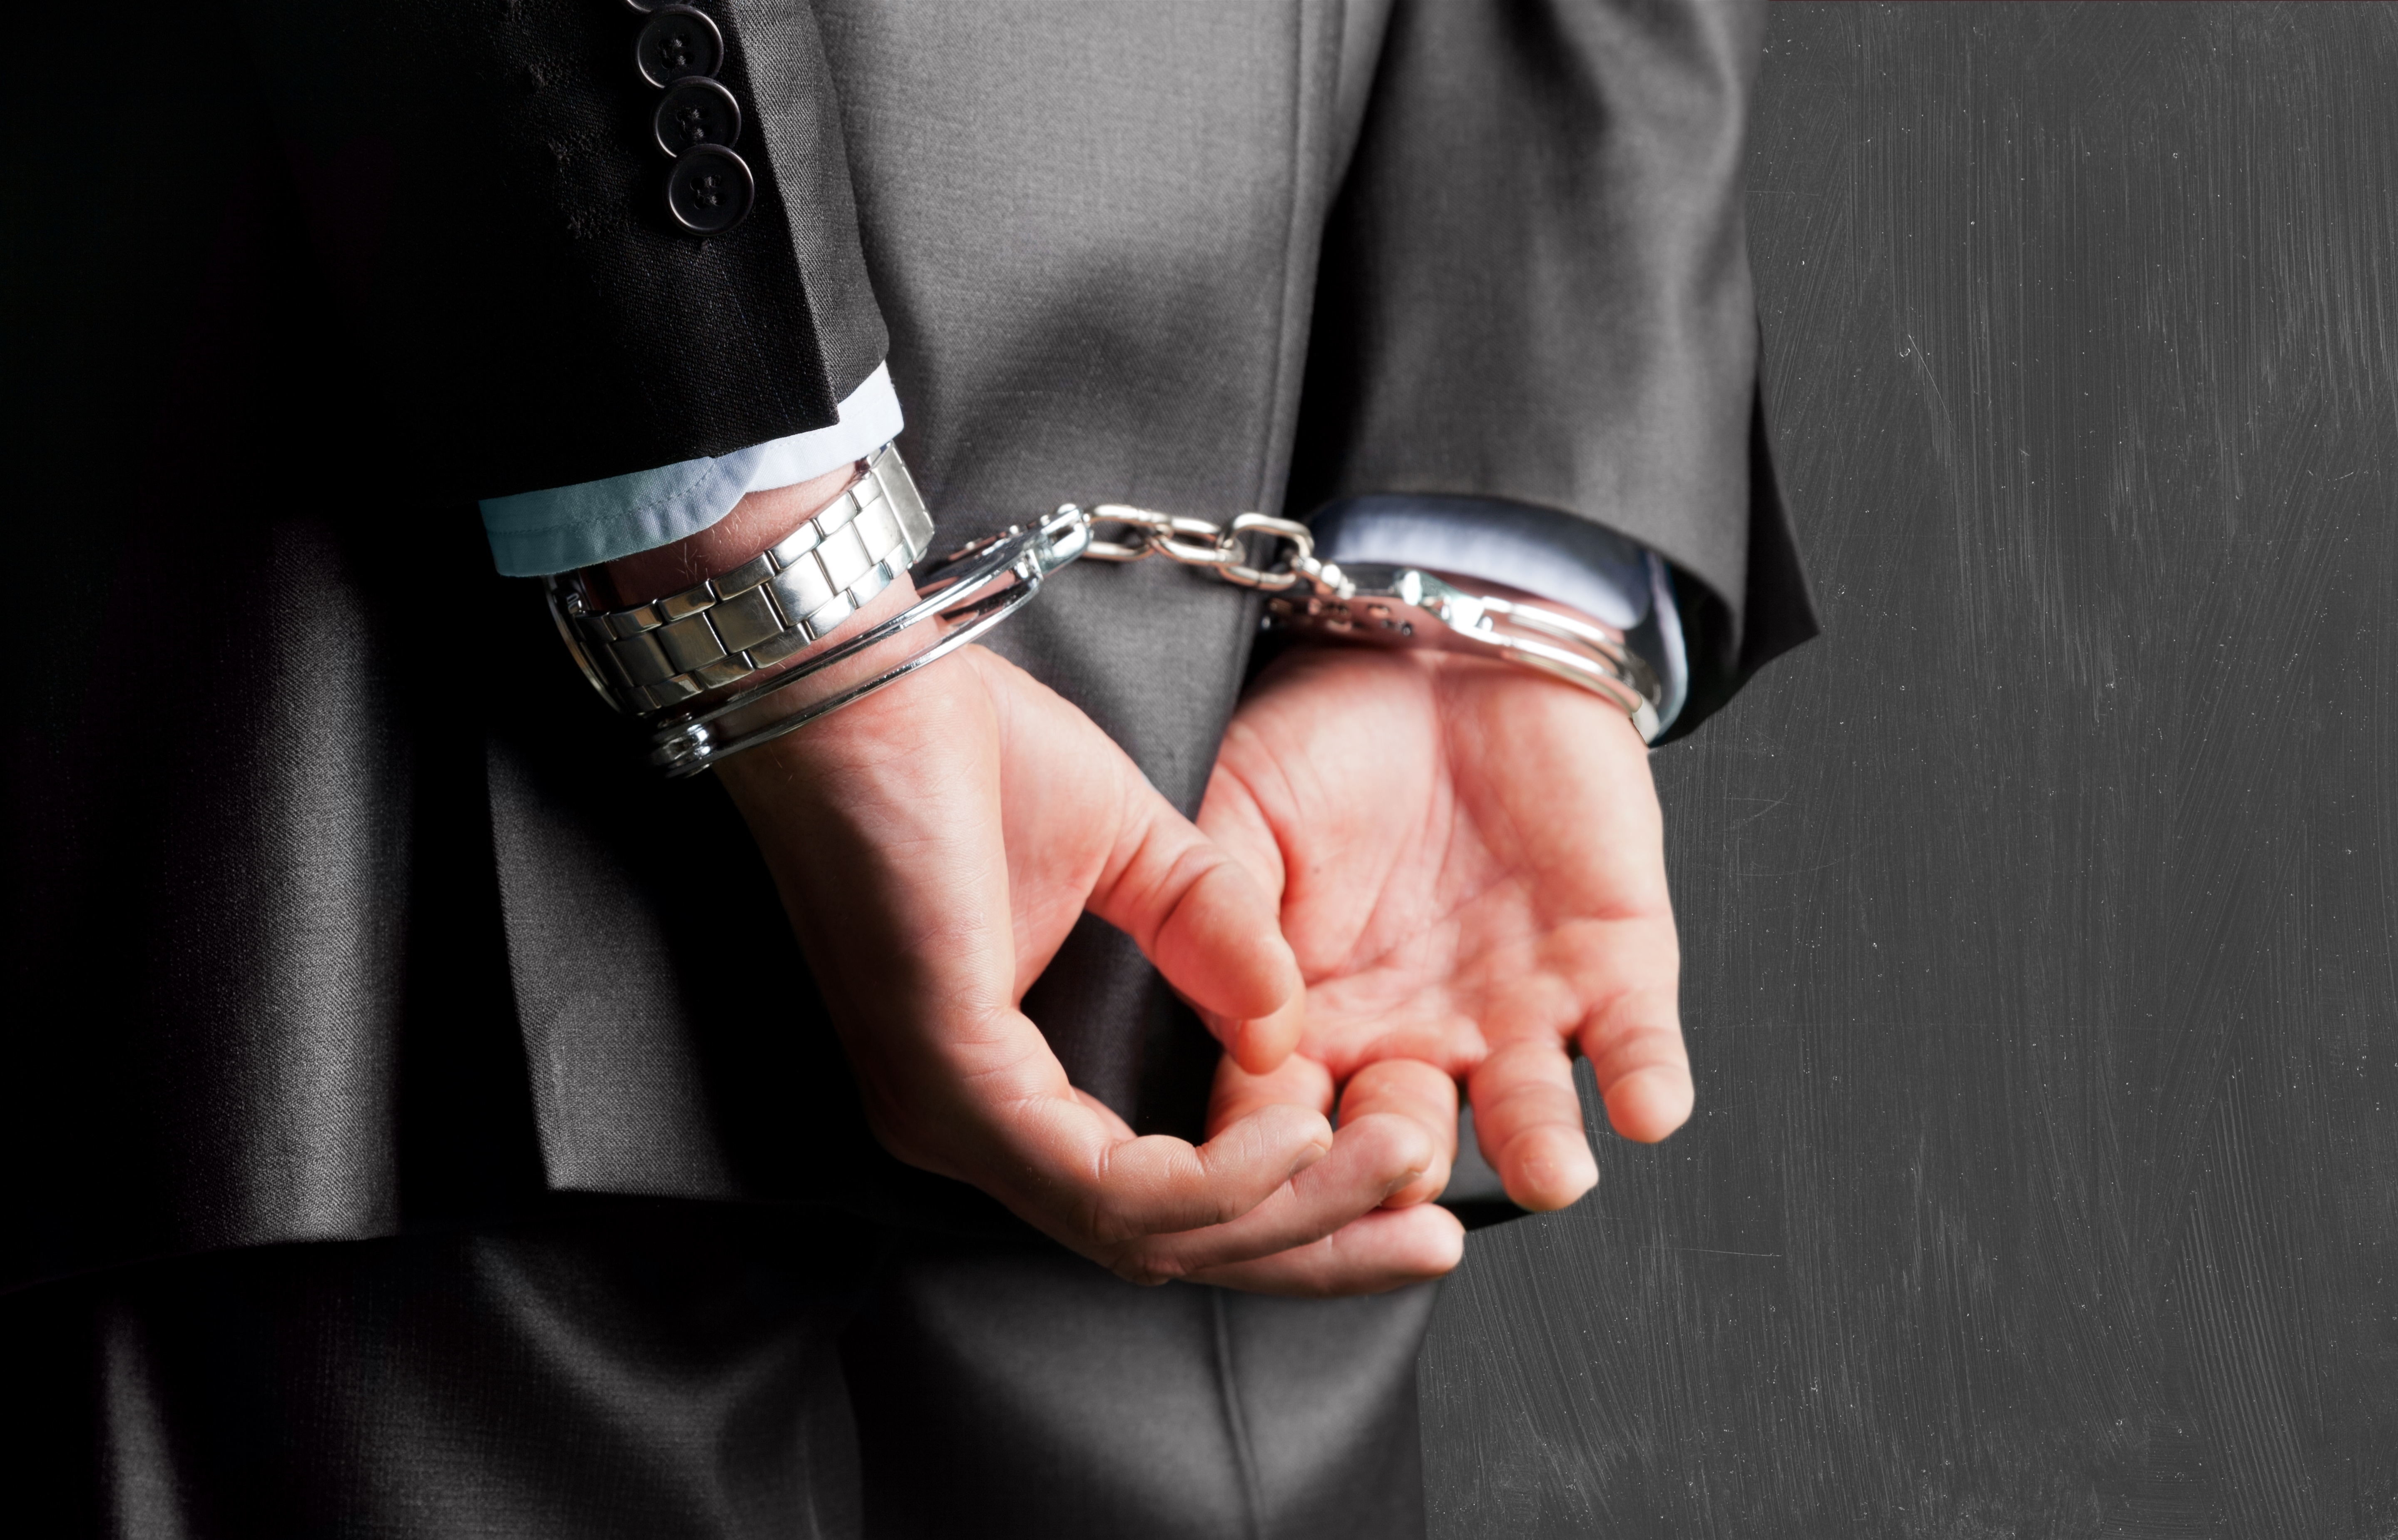 Handcuffs | Source: Shutterstock